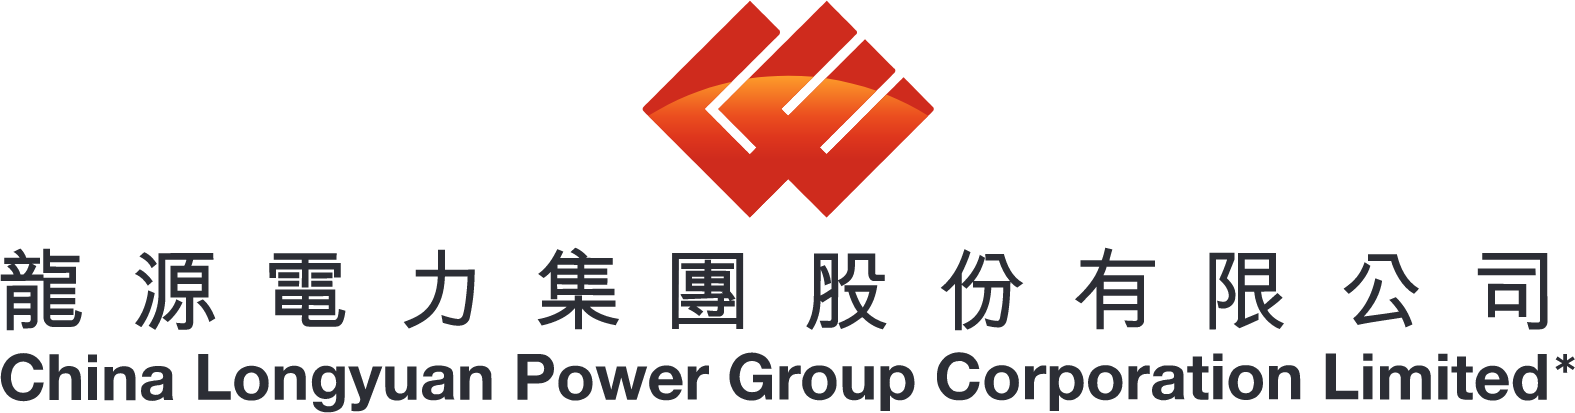 China Longyuan Power Group logo large (transparent PNG)